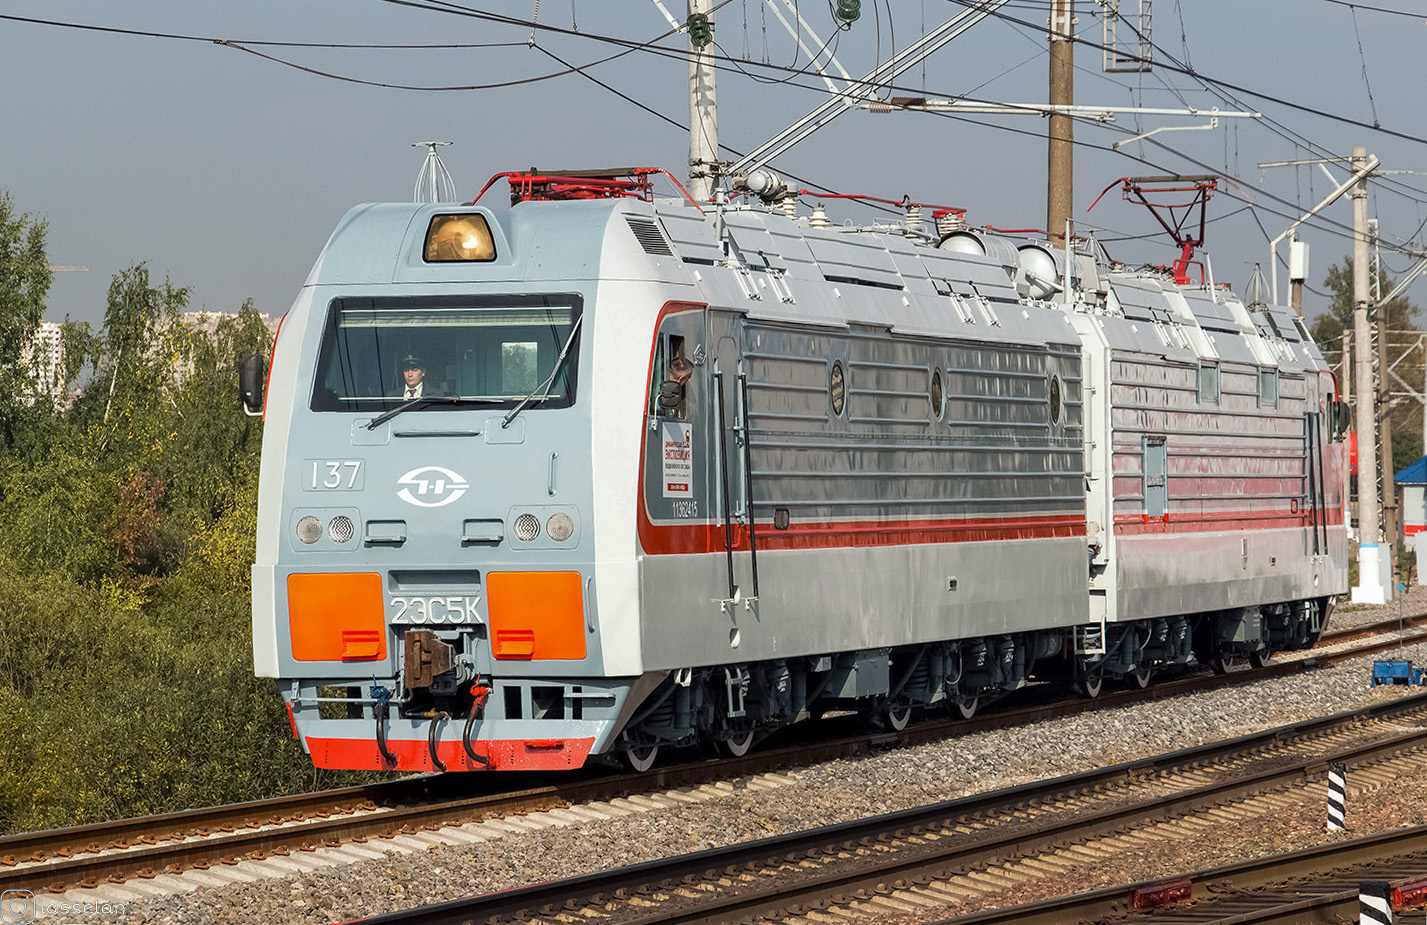 2ЭС5К-137; Московская железная дорога — IV Международный железнодорожный салон "ЭКСПО 1520" 2013